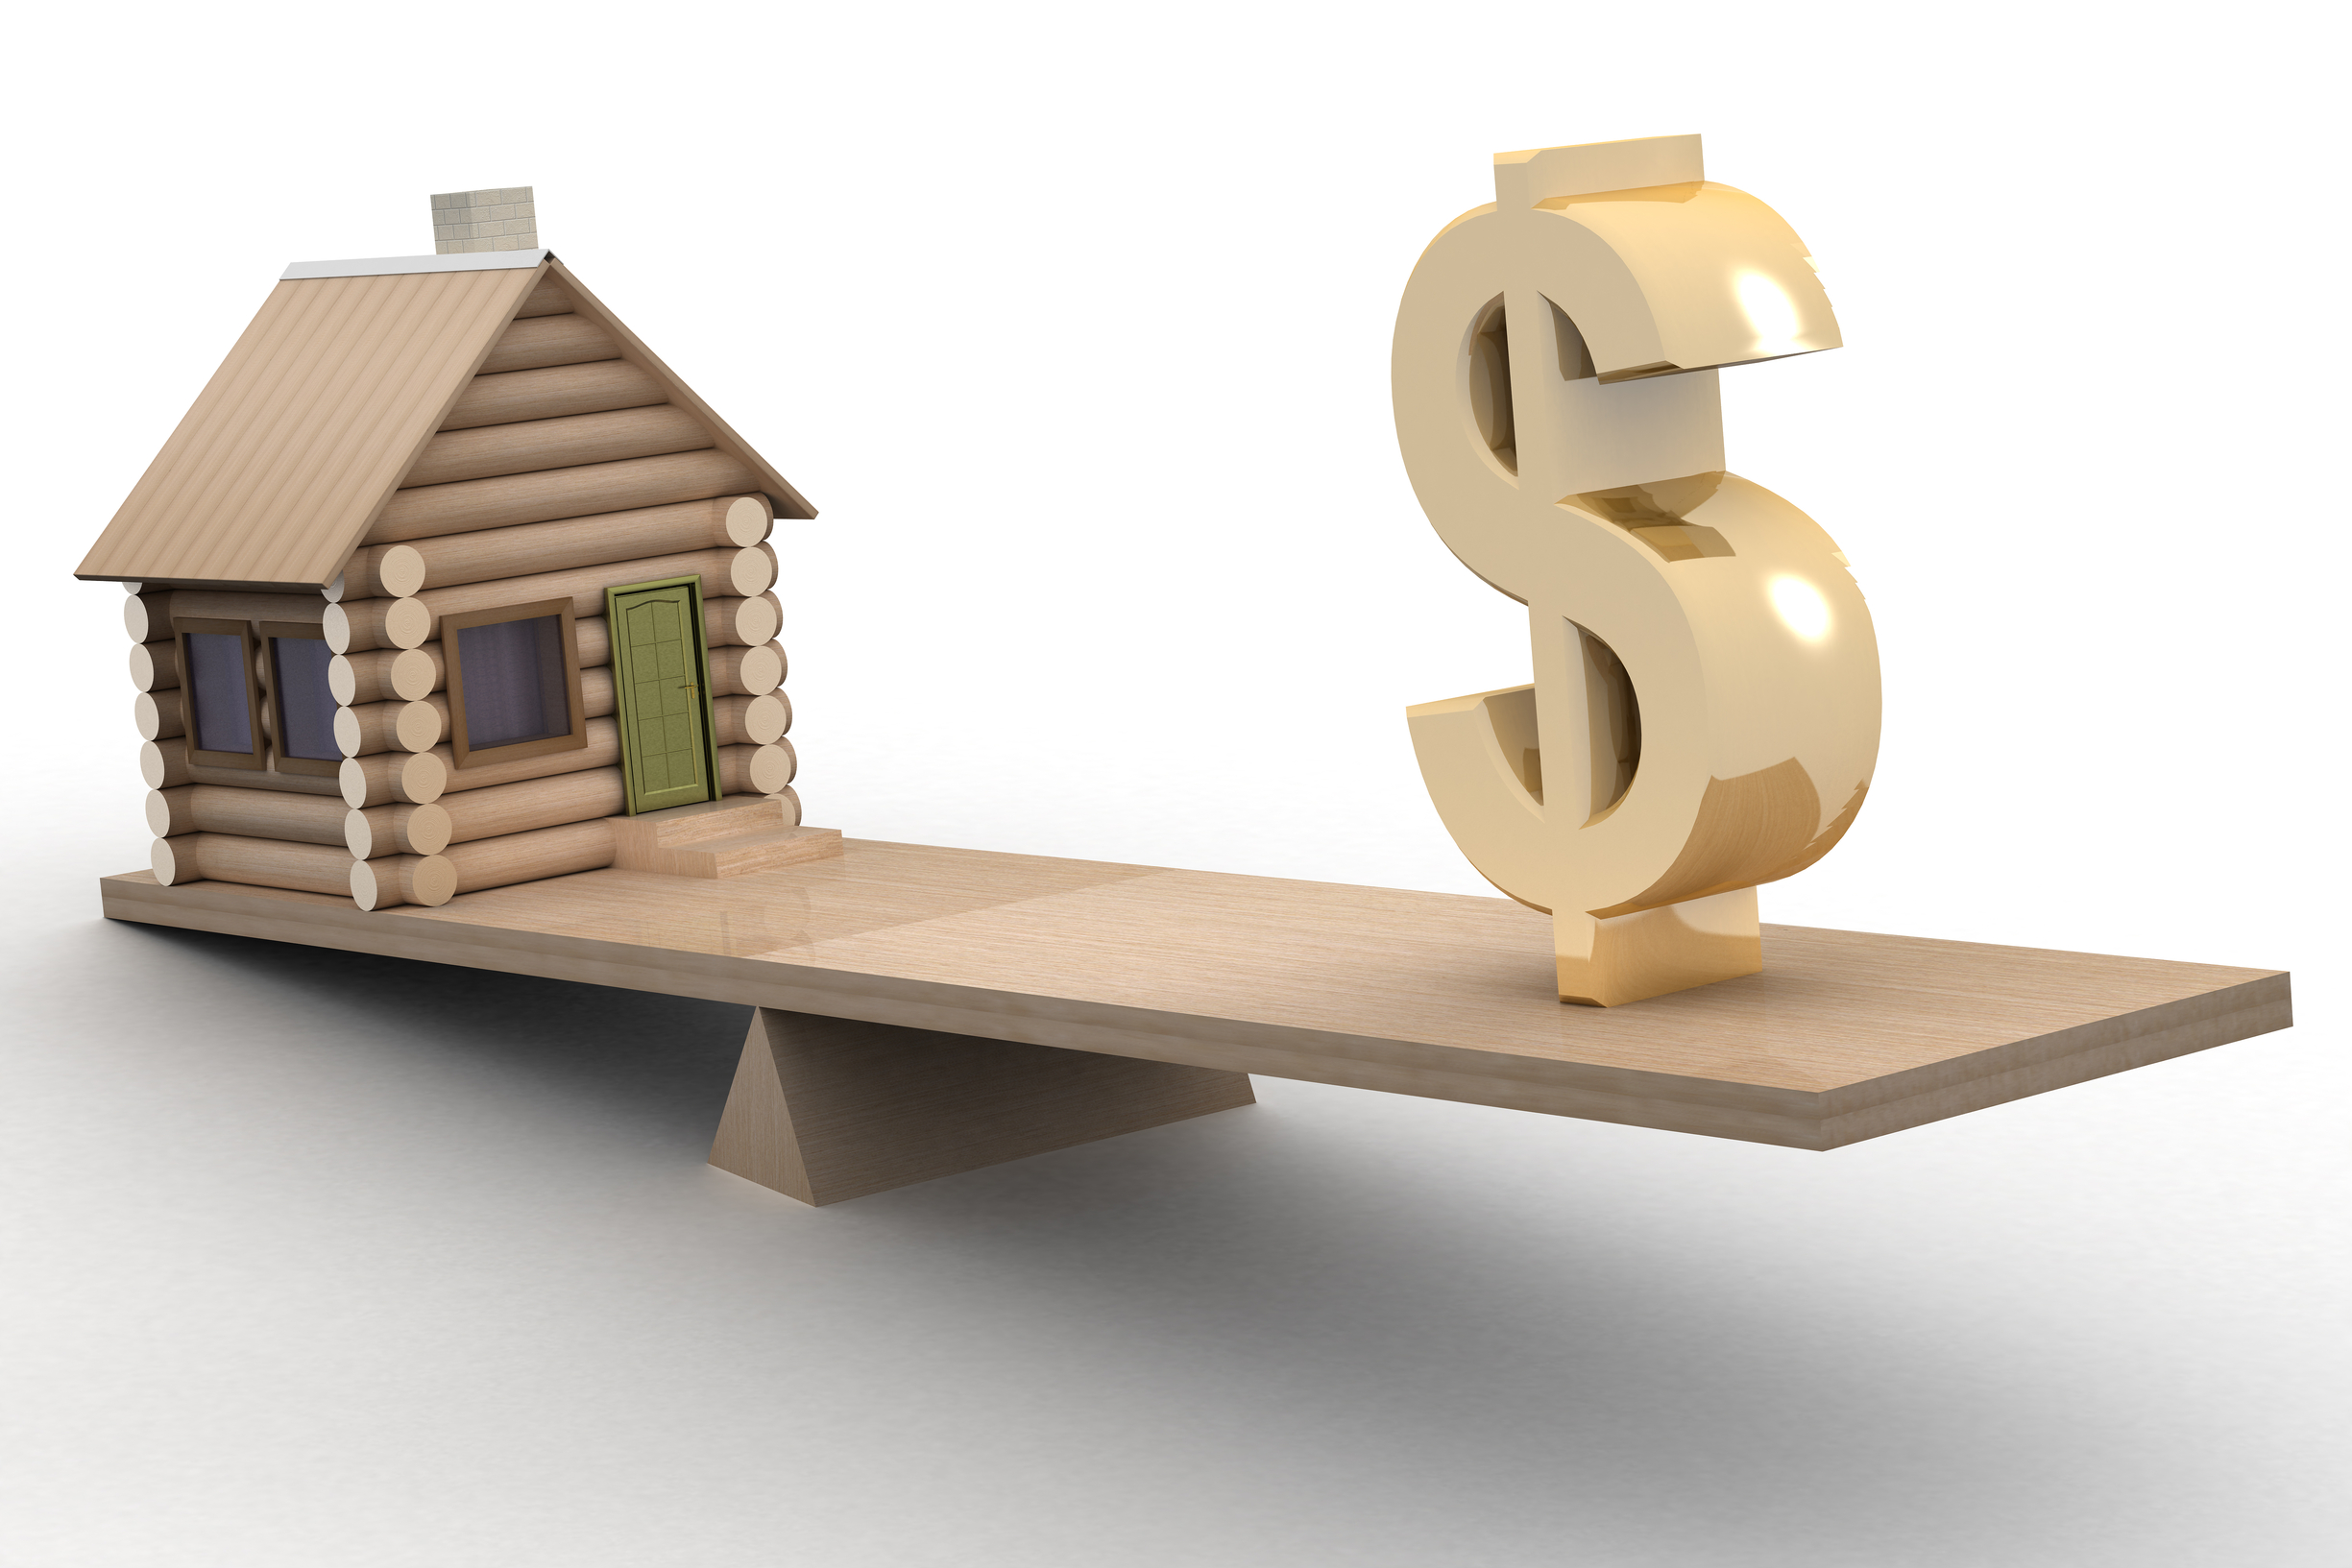 Xem xét tài chính thật kỹ và không nên mua theo cảm tính khi lần đầu mua nhà